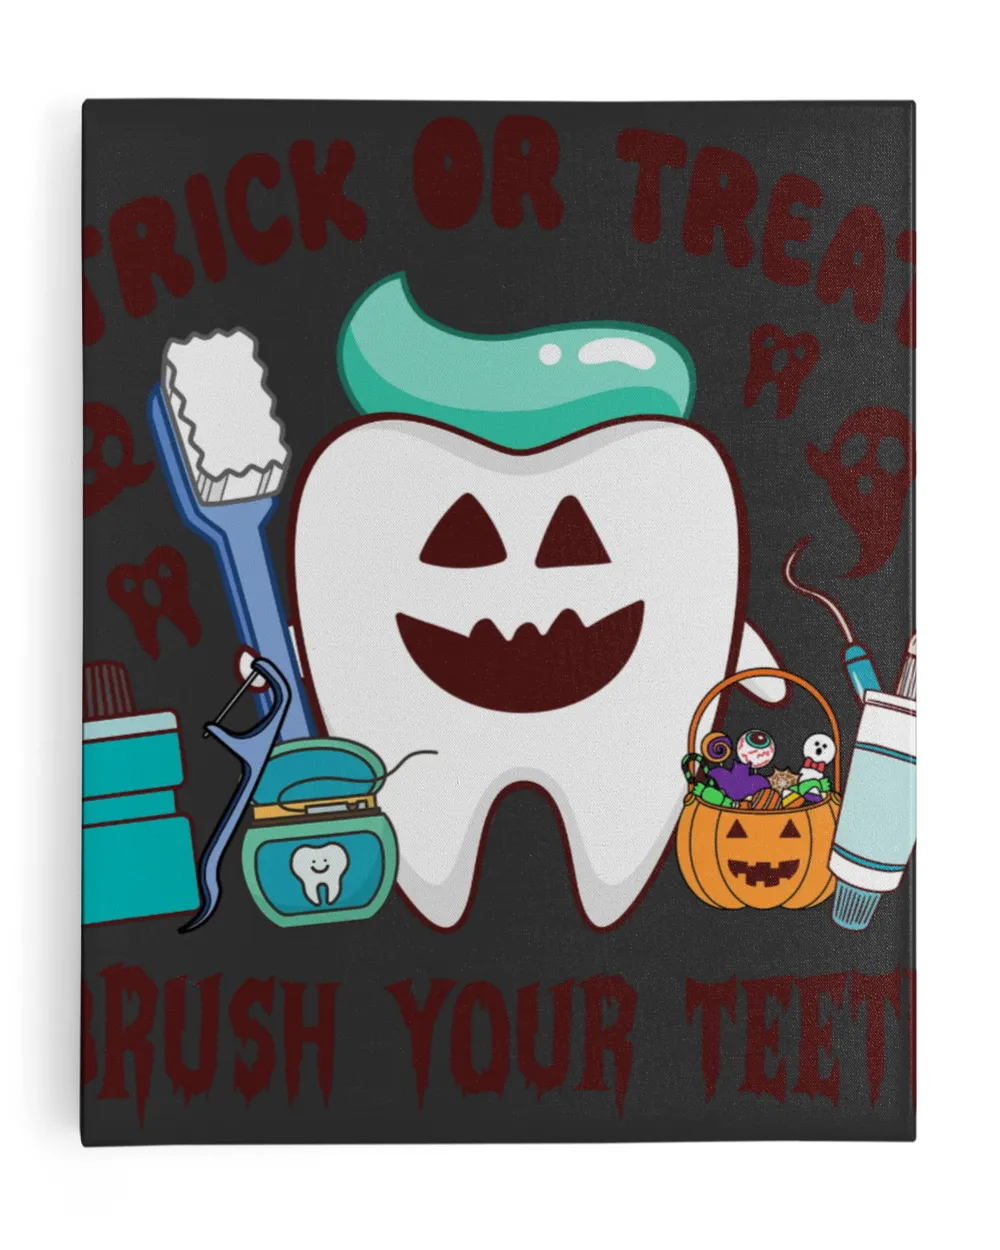 Trick Or Treat Brush Your Teeth Sweatshirt, Hoodie, Tote bag, Canvas